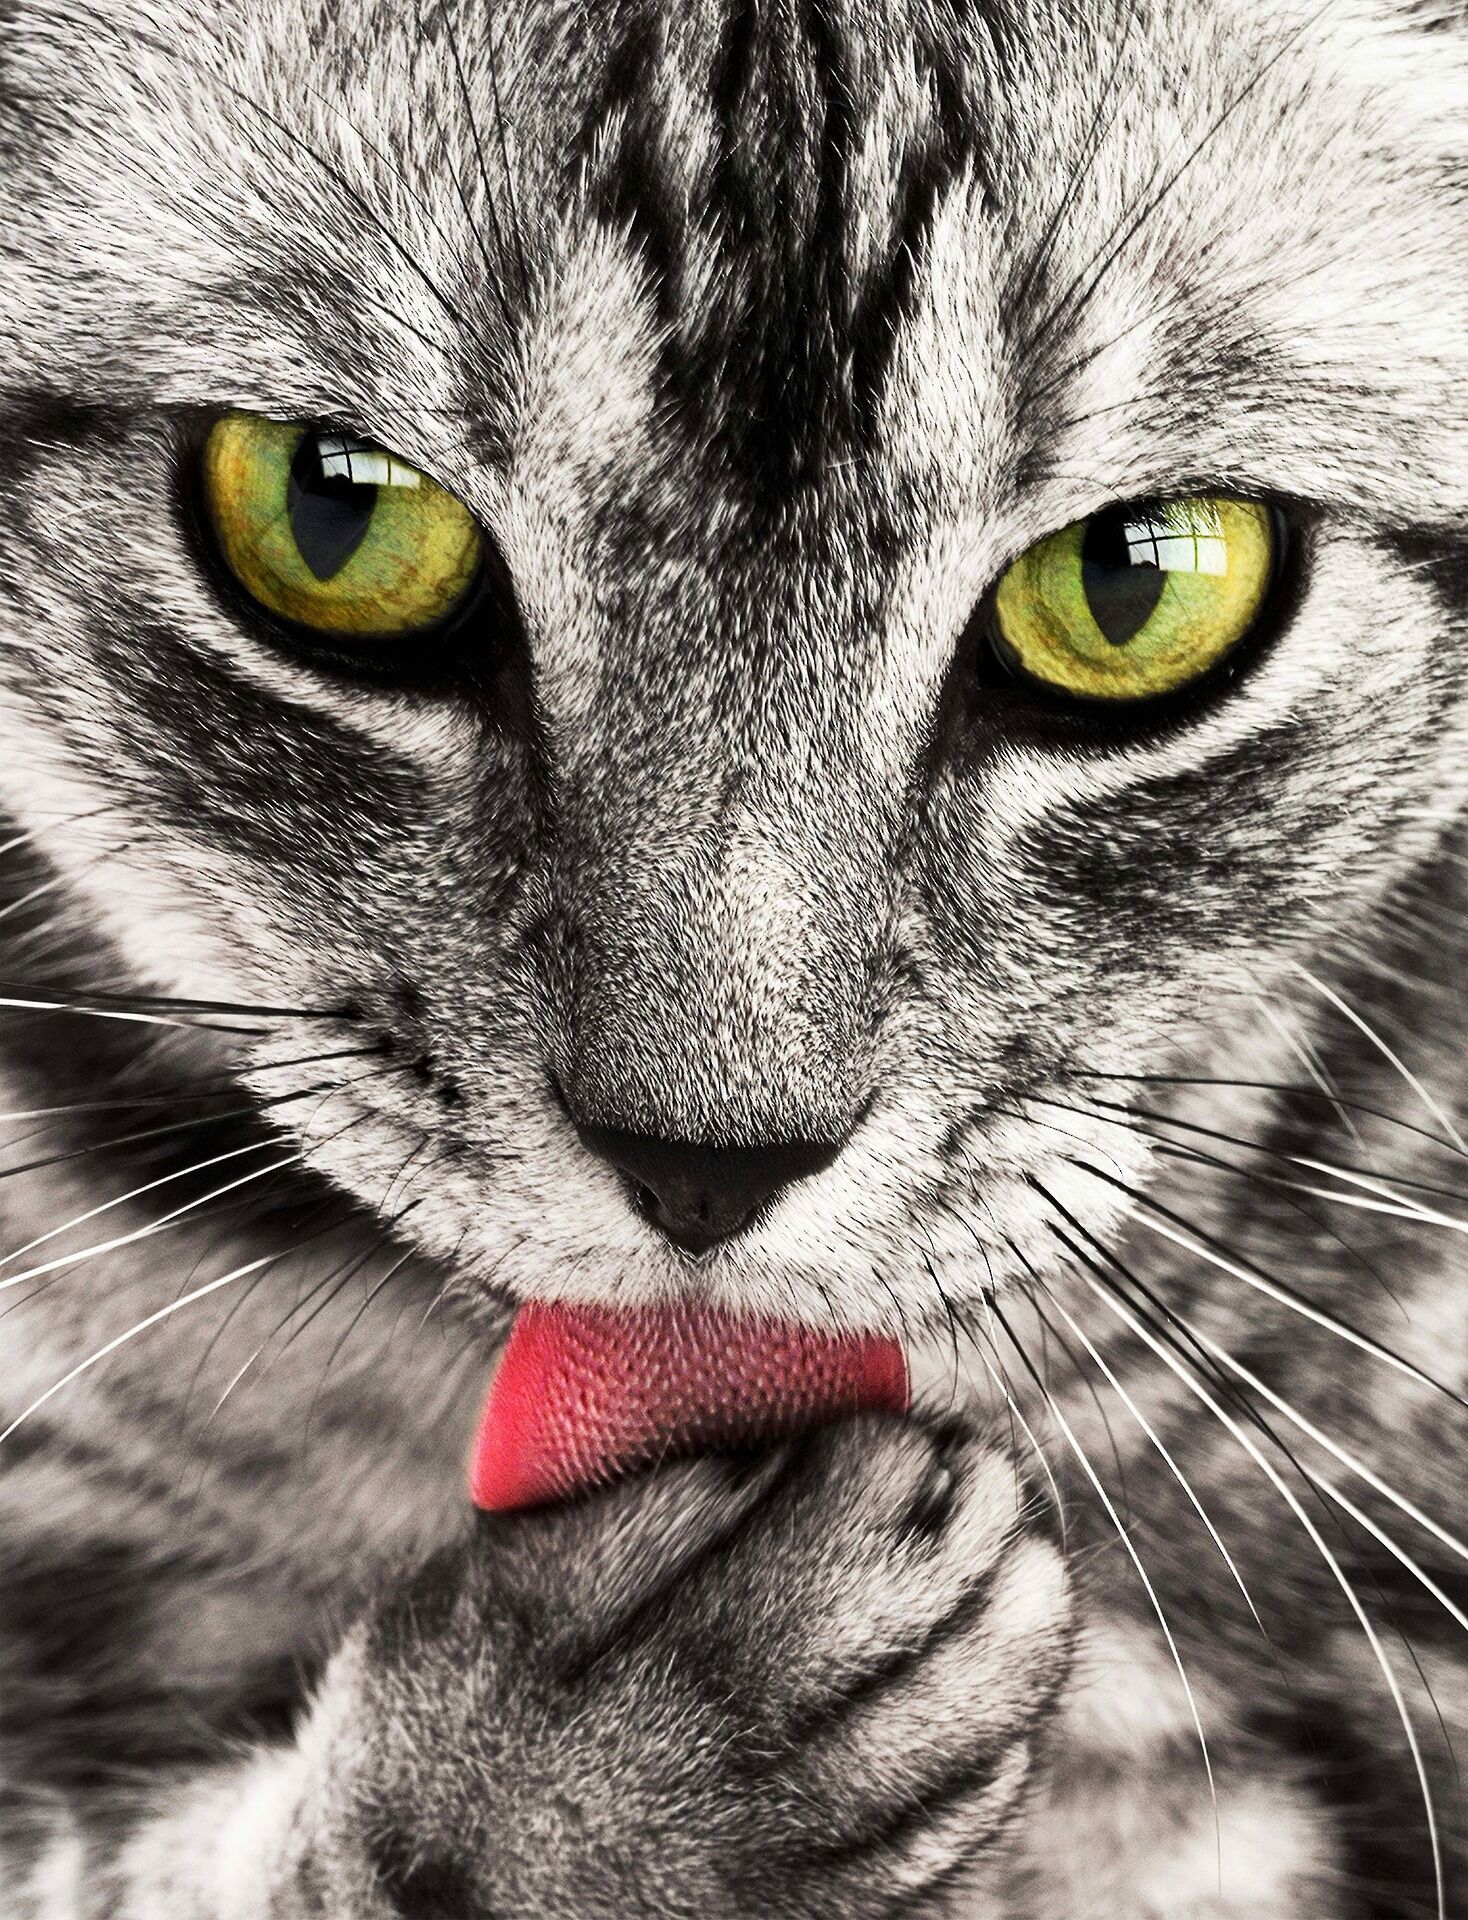 Ученые насчитали у кошек сотни выражений лиц: о чем еще говорится в сенсационном исследовании